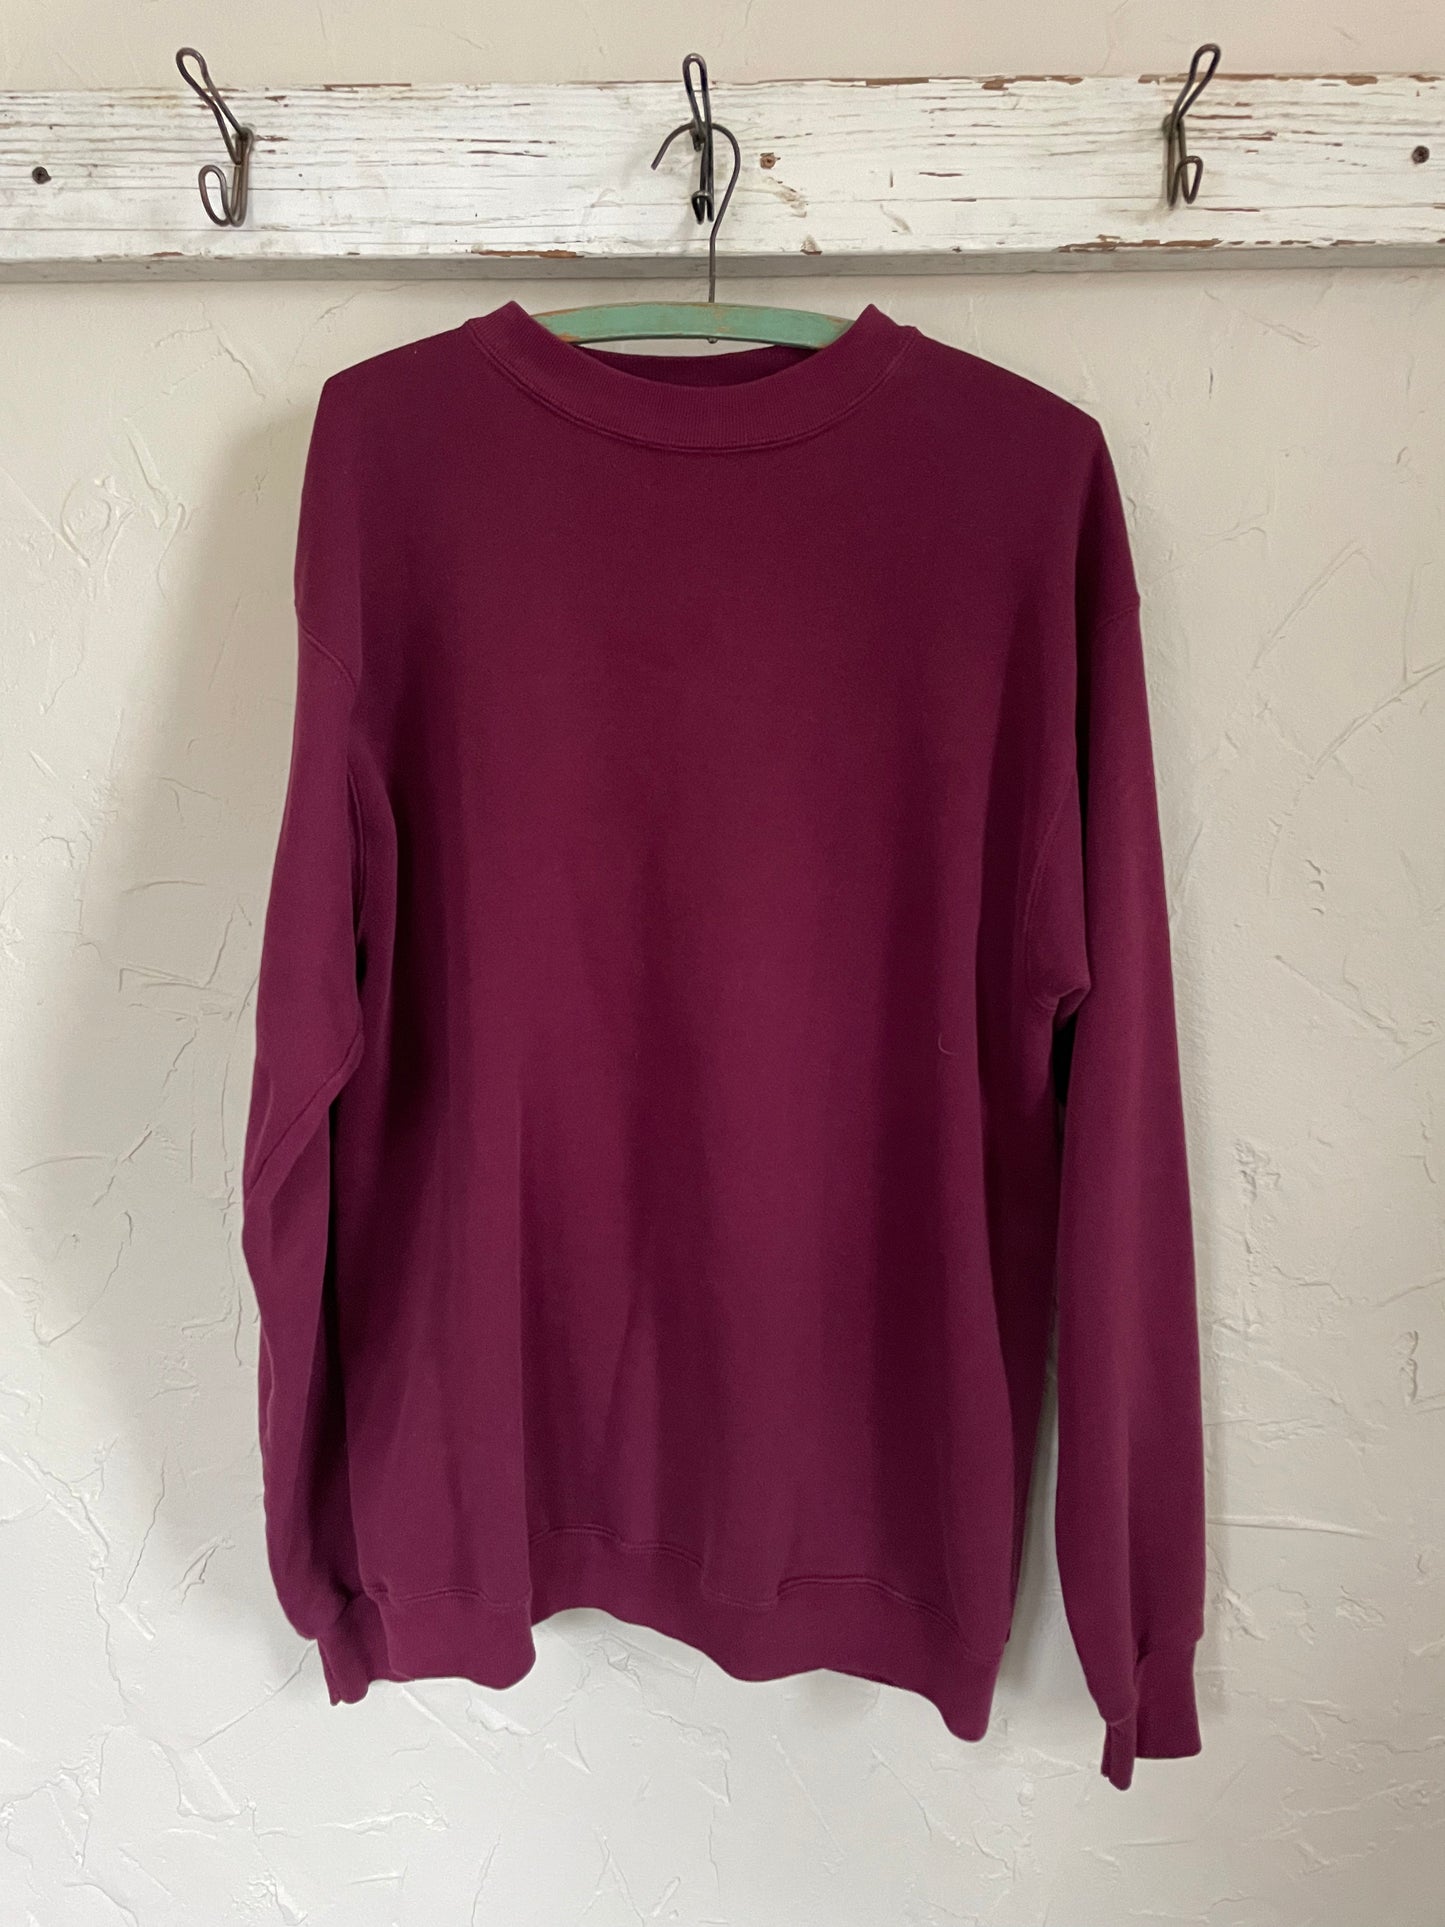 90s Blank Maroon Sweatshirt